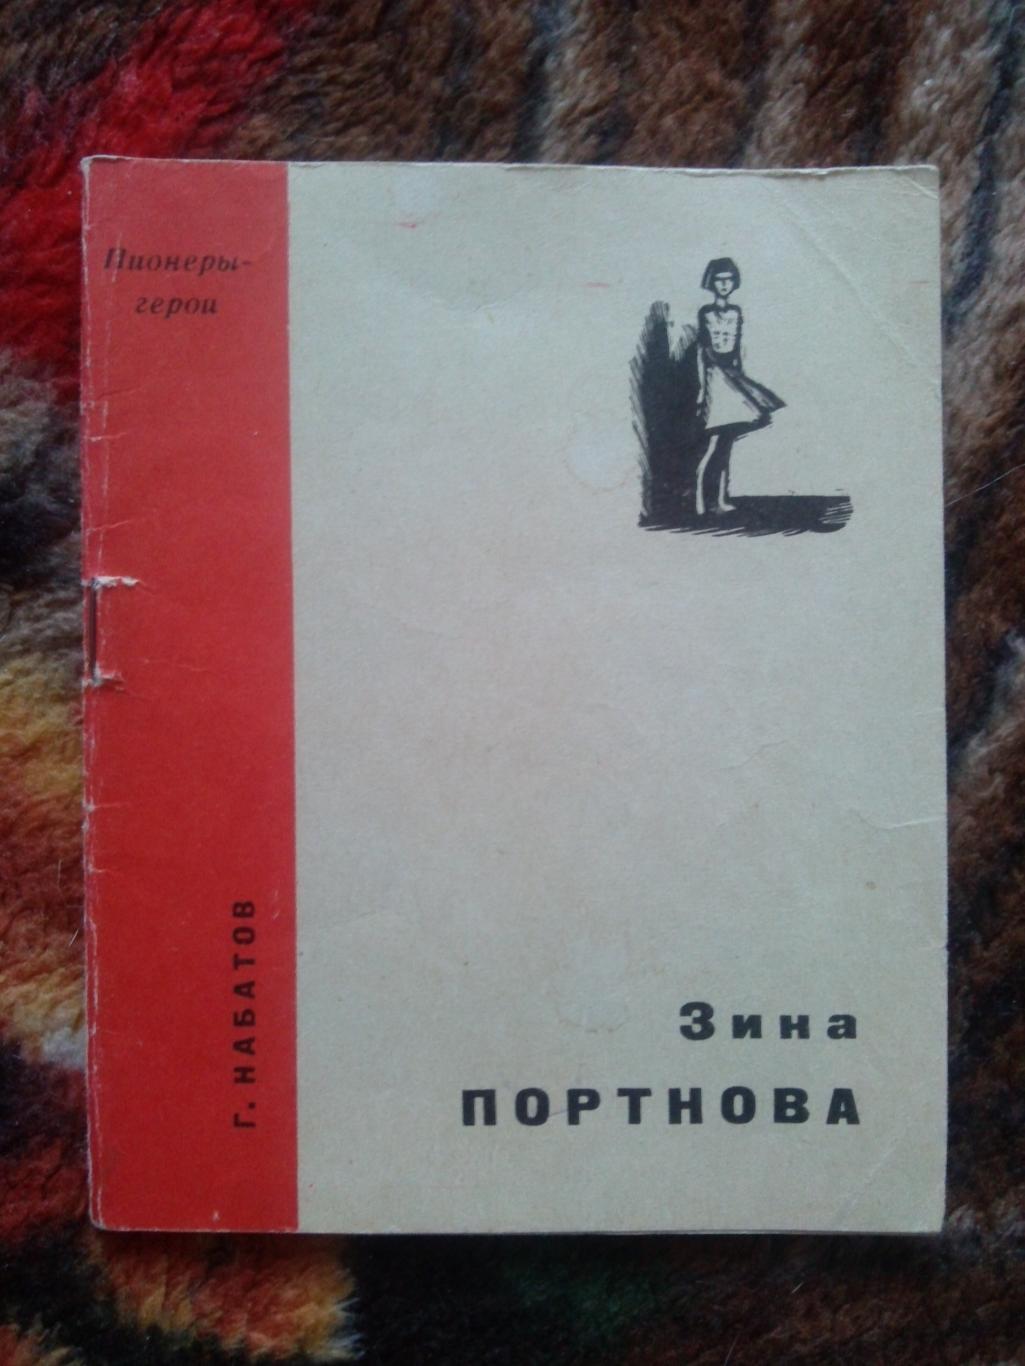 Пионеры-герои (Плакат + брошюра) 1967 г. Зина Портнова (Пионер , агитация) 3